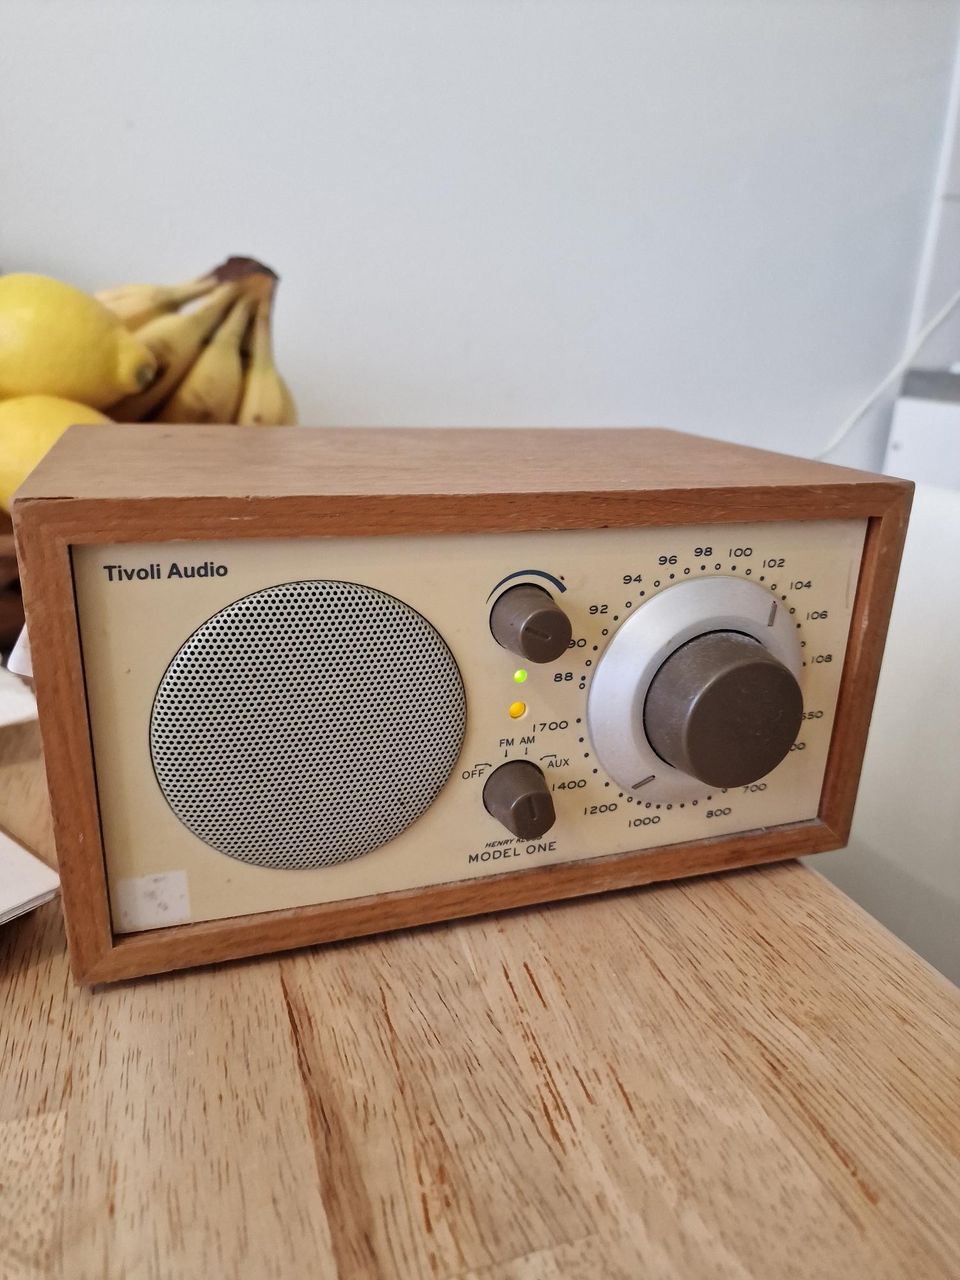 Tivoli radio